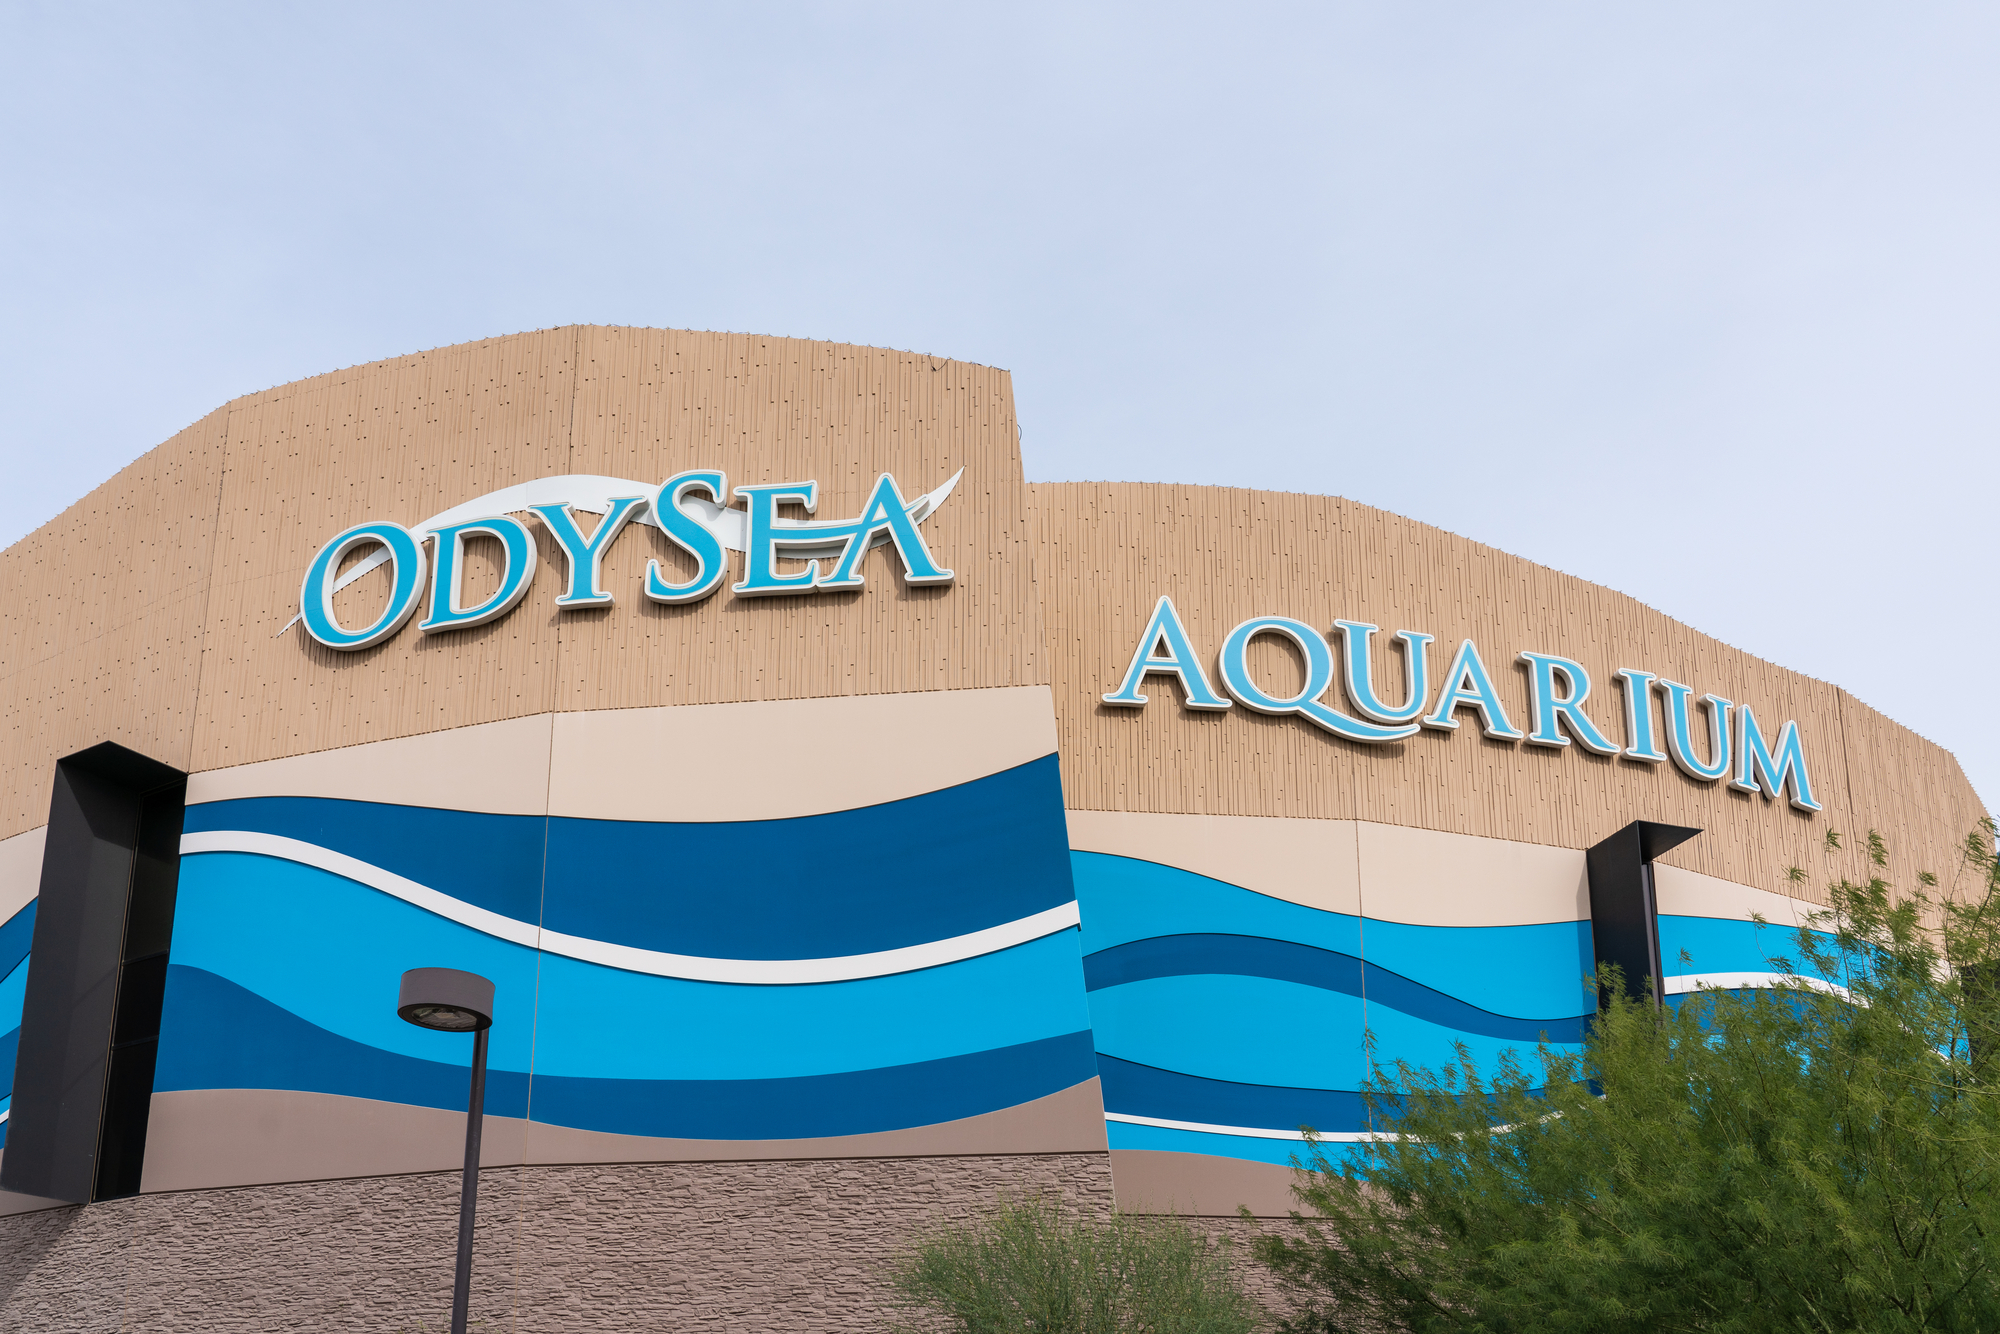 OdySea Acquarium in Scottsdale, Arizona